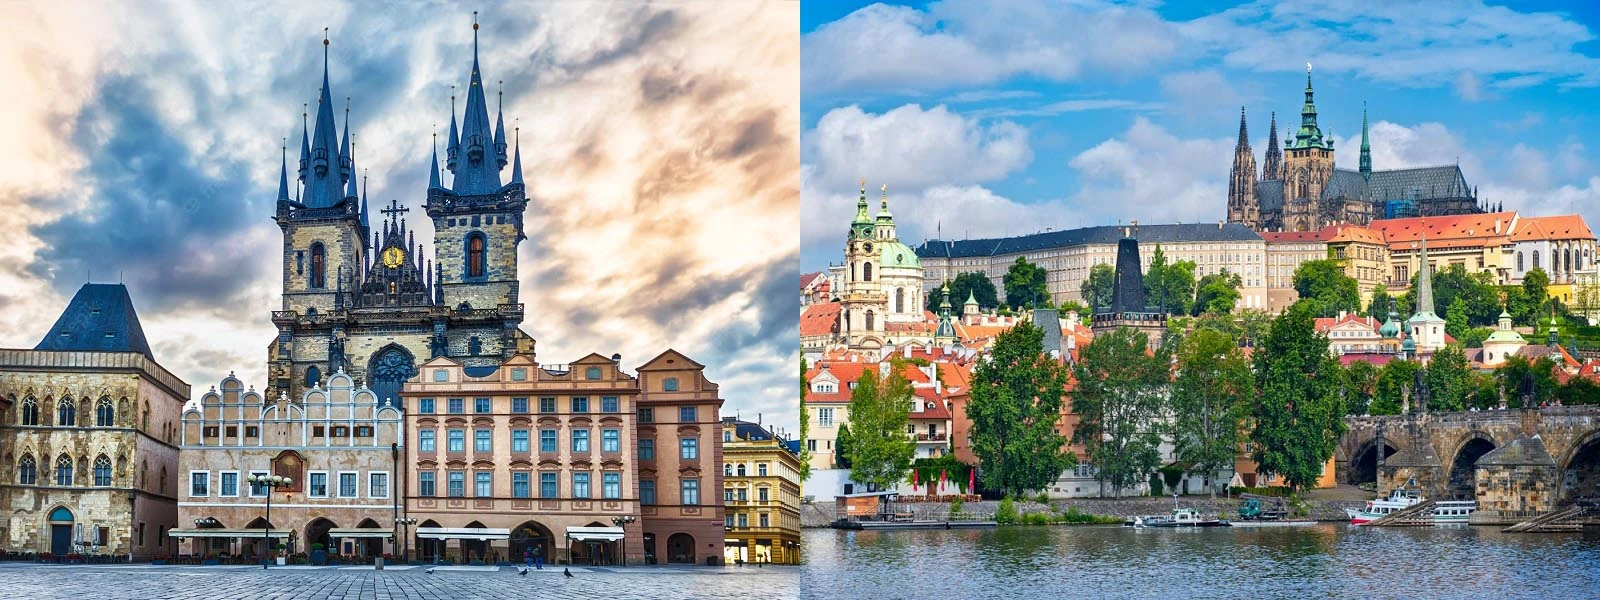 Prague Best Places